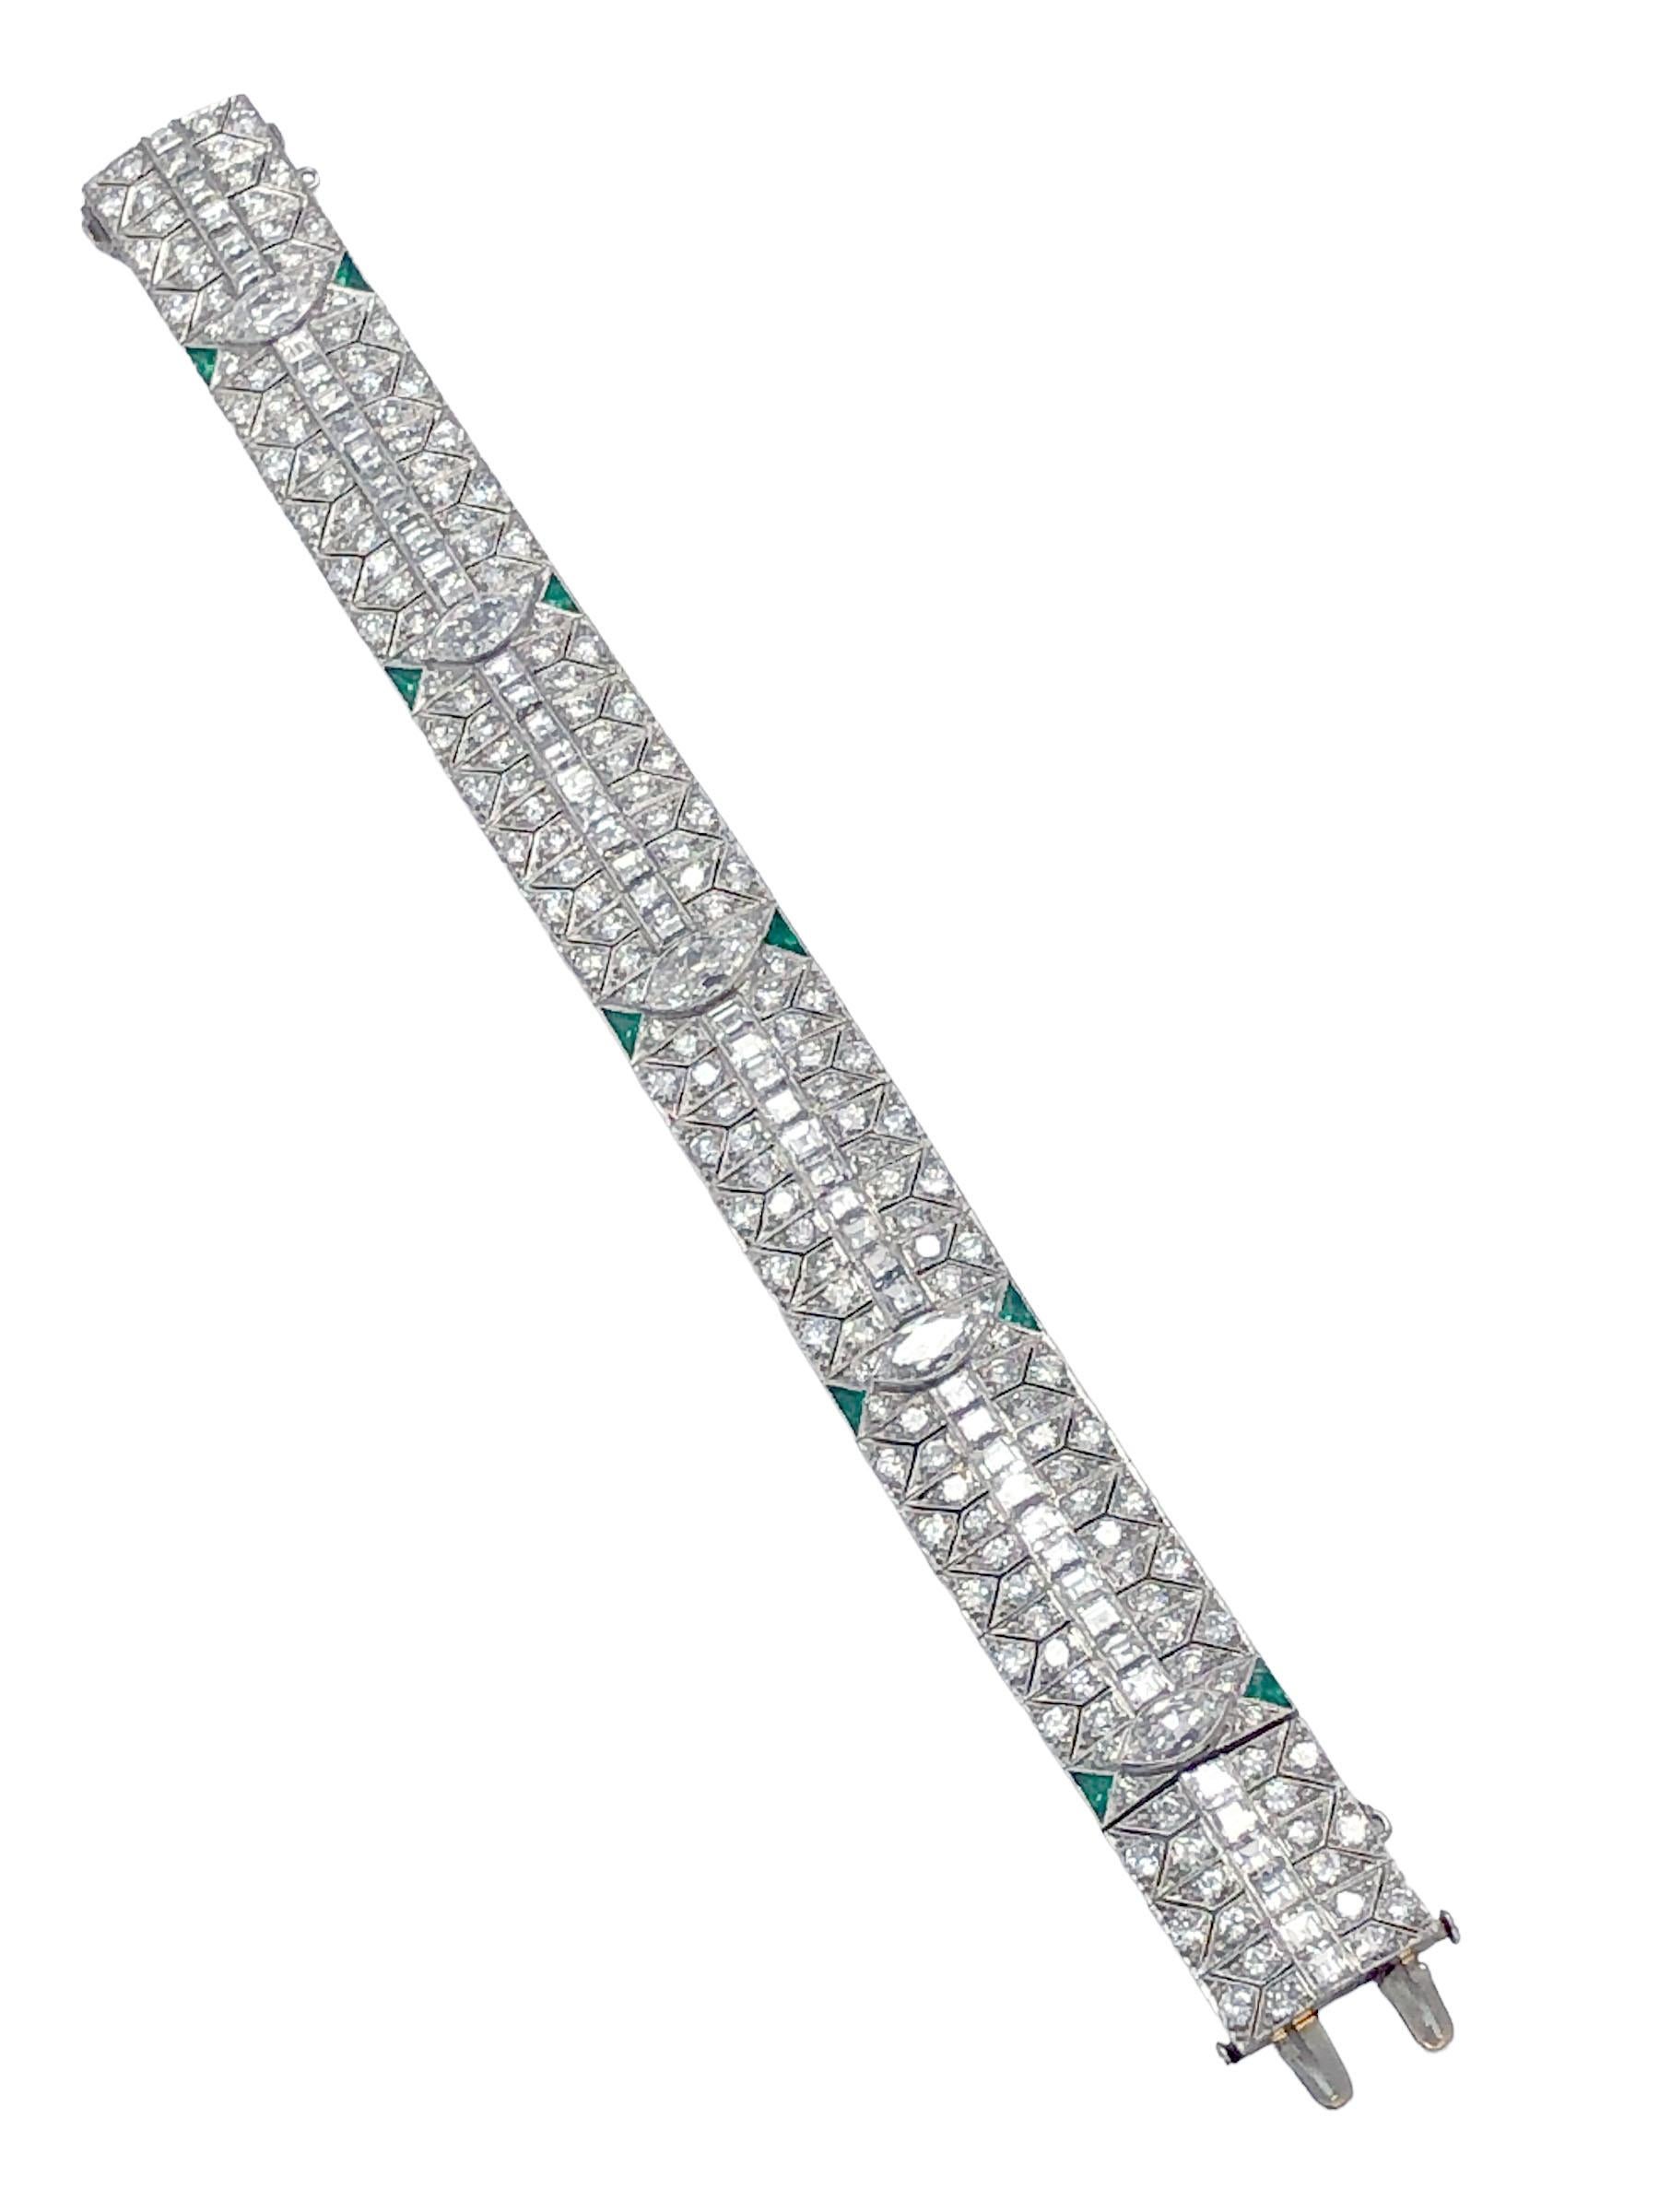 CIRCA 1930er Jahre Platin True Art Deco Design Armband, Messung 7 Zoll in der Länge und 5/8 Zoll breit, mit Marquise Form Diamanten die größte ist etwa 1 Karat und die anderen etwa 3/4 Karat jeweils, eine mittlere Reihe von Square, Step-Cuts und